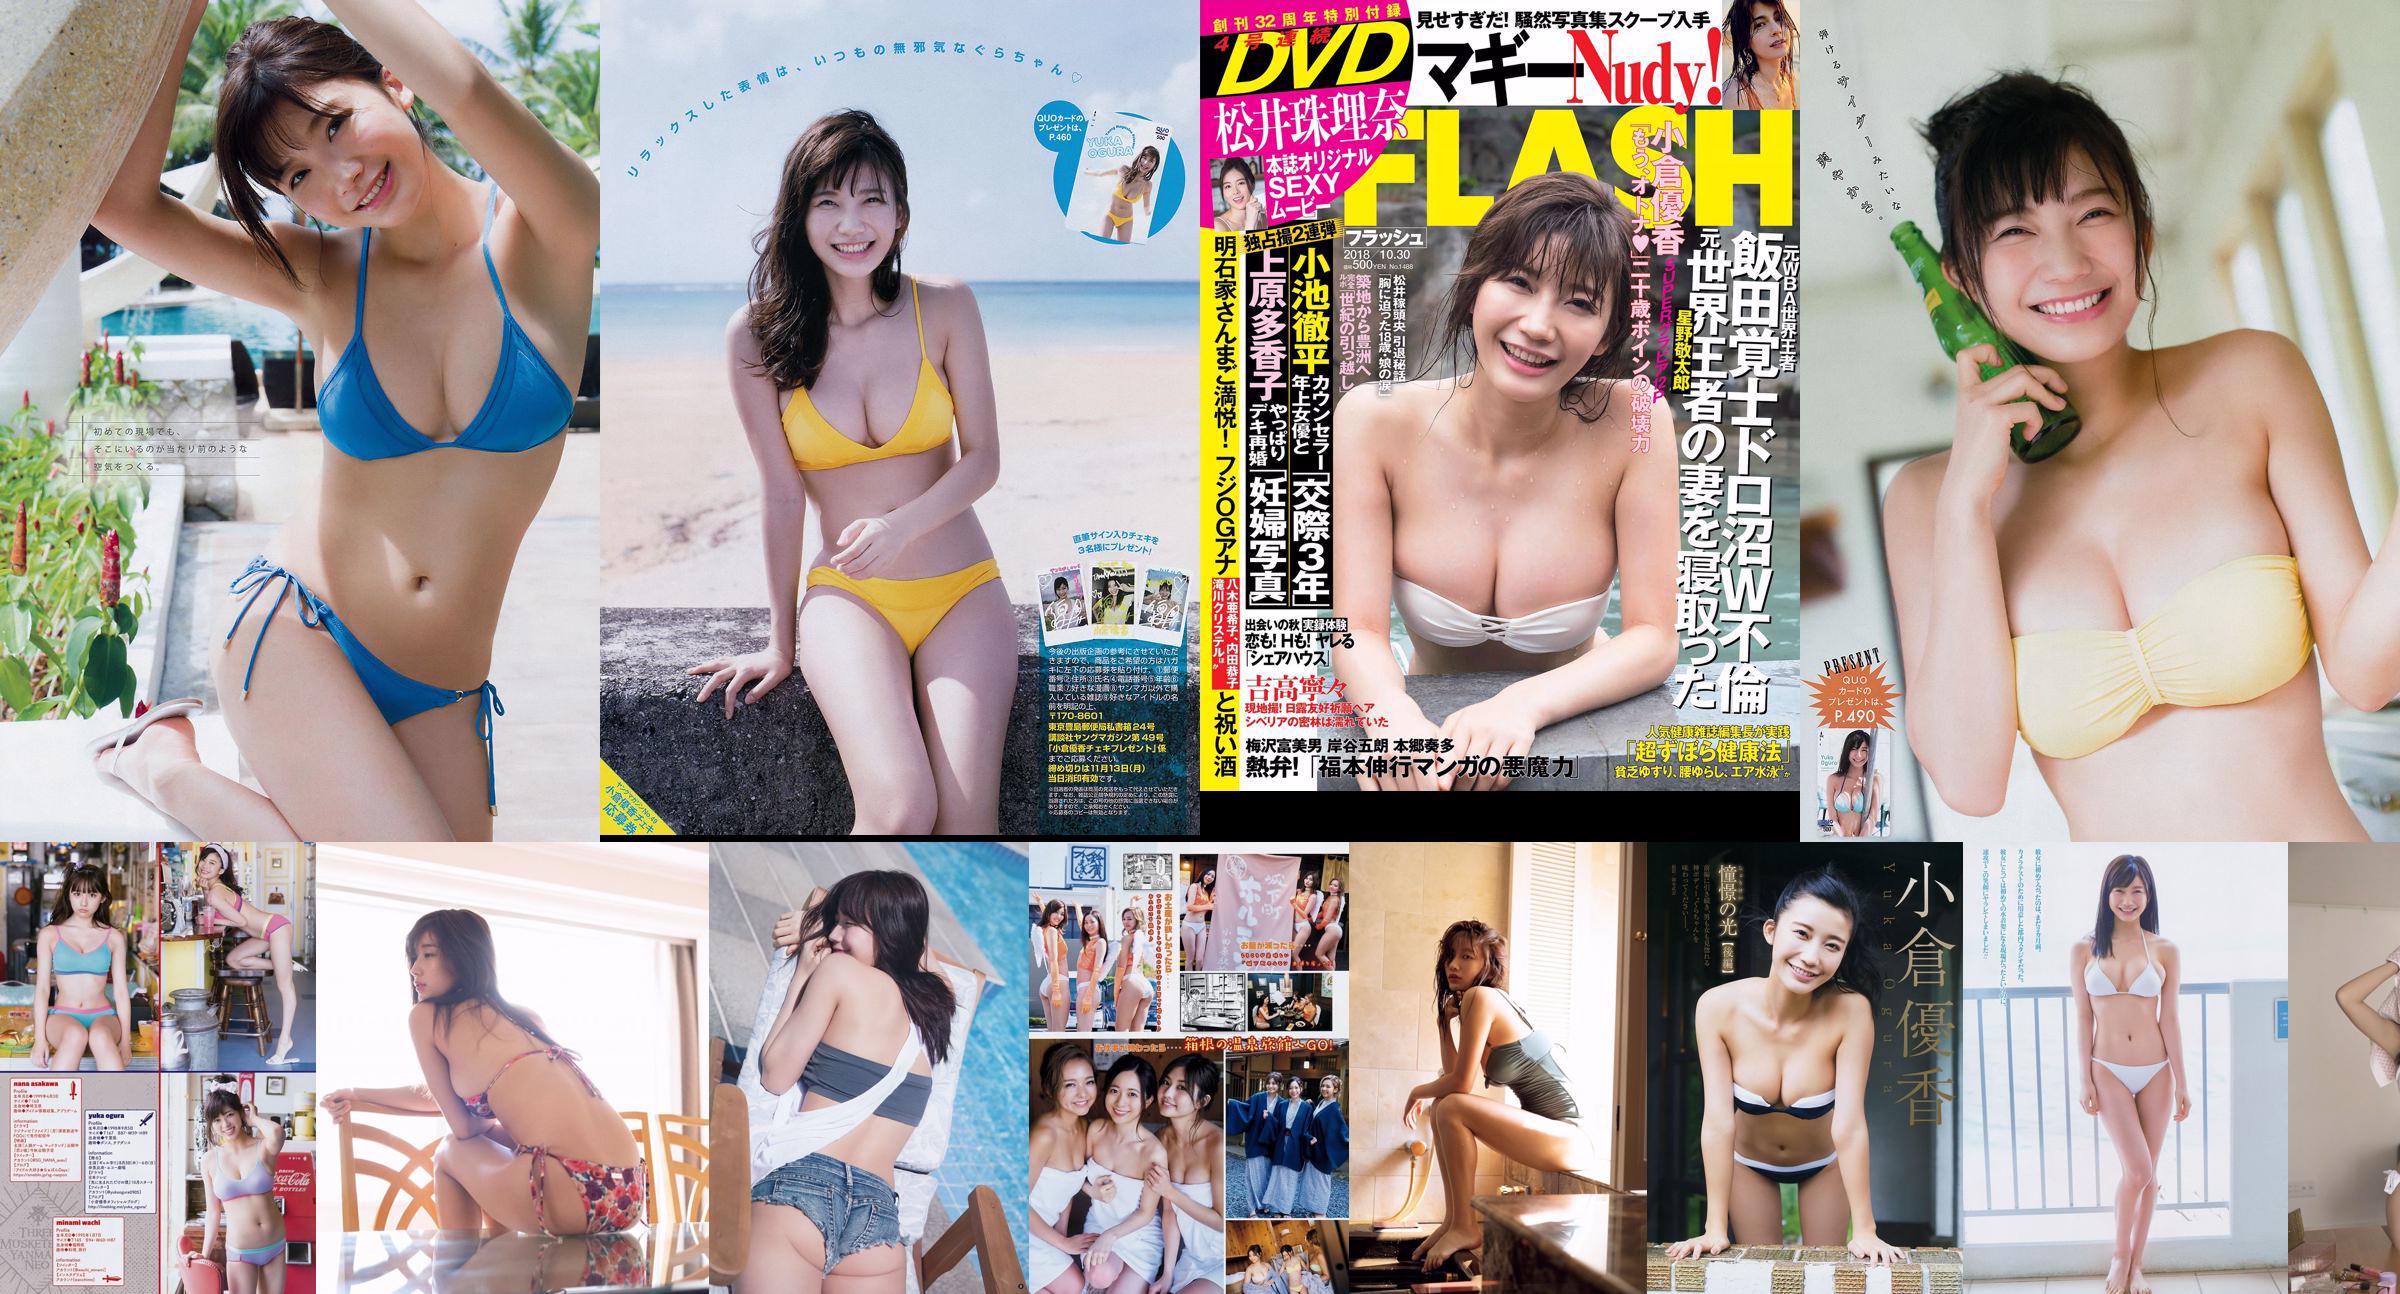 KOM_I Yuka Ogura Haruka Koizumi Mayu Yoshioka Sayaka Tomaru Mina Yamakawa Natsuki Kawamura Keyakizaka46 [Wekelijkse Playboy] 2018 No.27 Foto No.c96744 Pagina 1